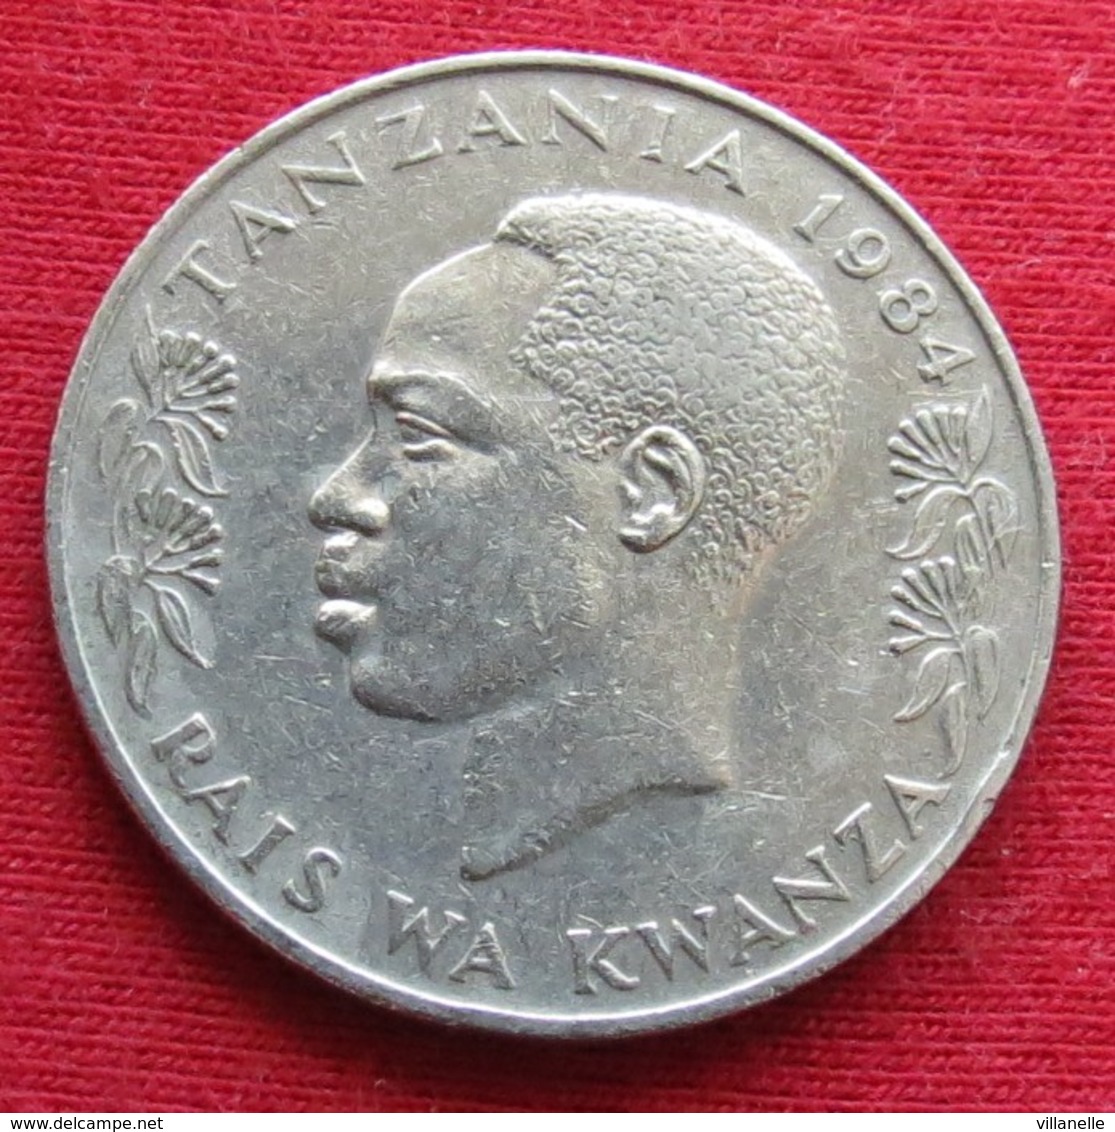 Tanzânia 1 Shilingi 1984 KM# 4 Tanzanie - Tanzanie